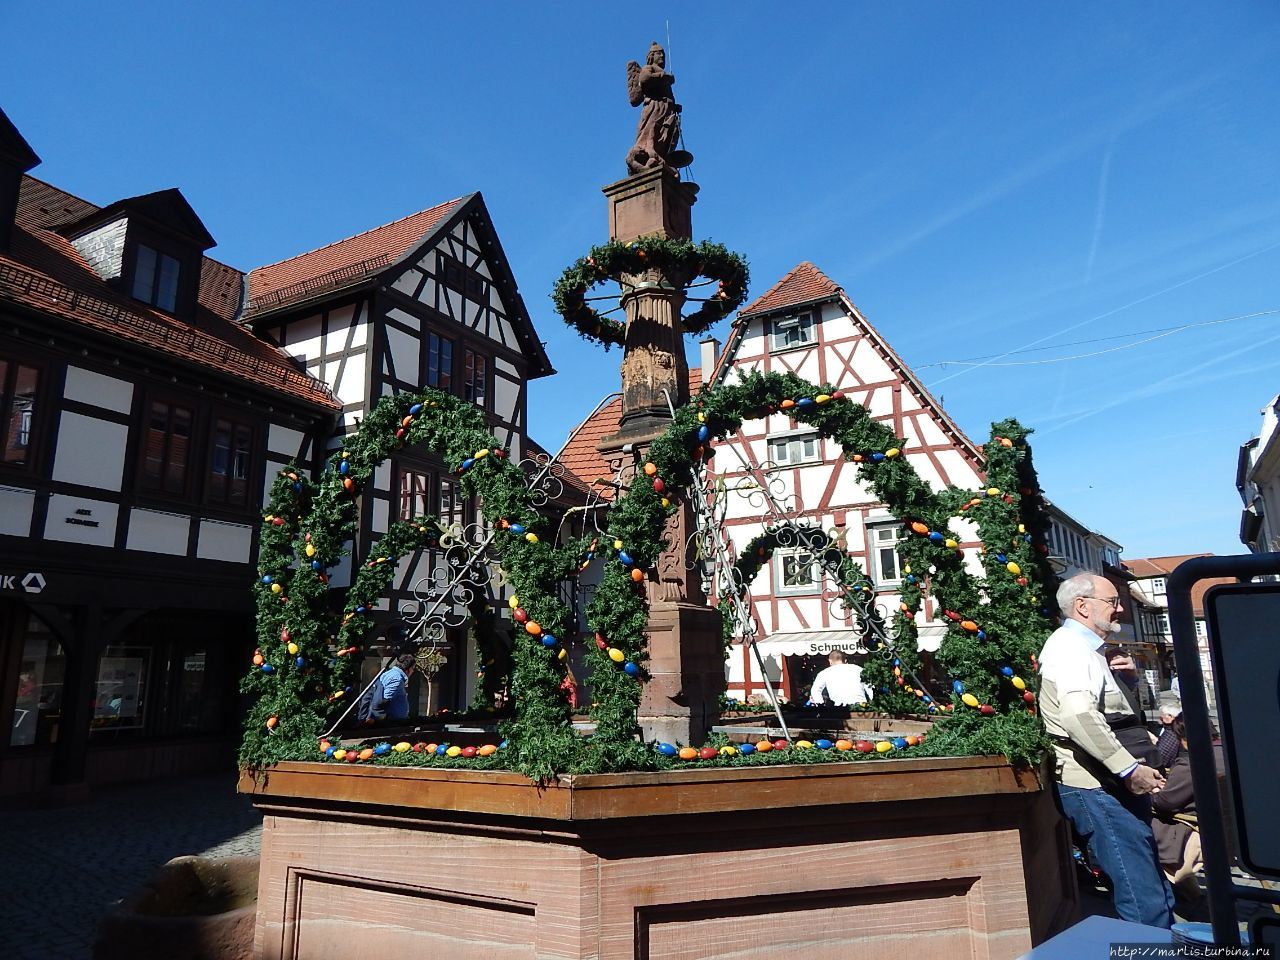 Пасхальное украшение городского фонтана Михельштадт, Германия